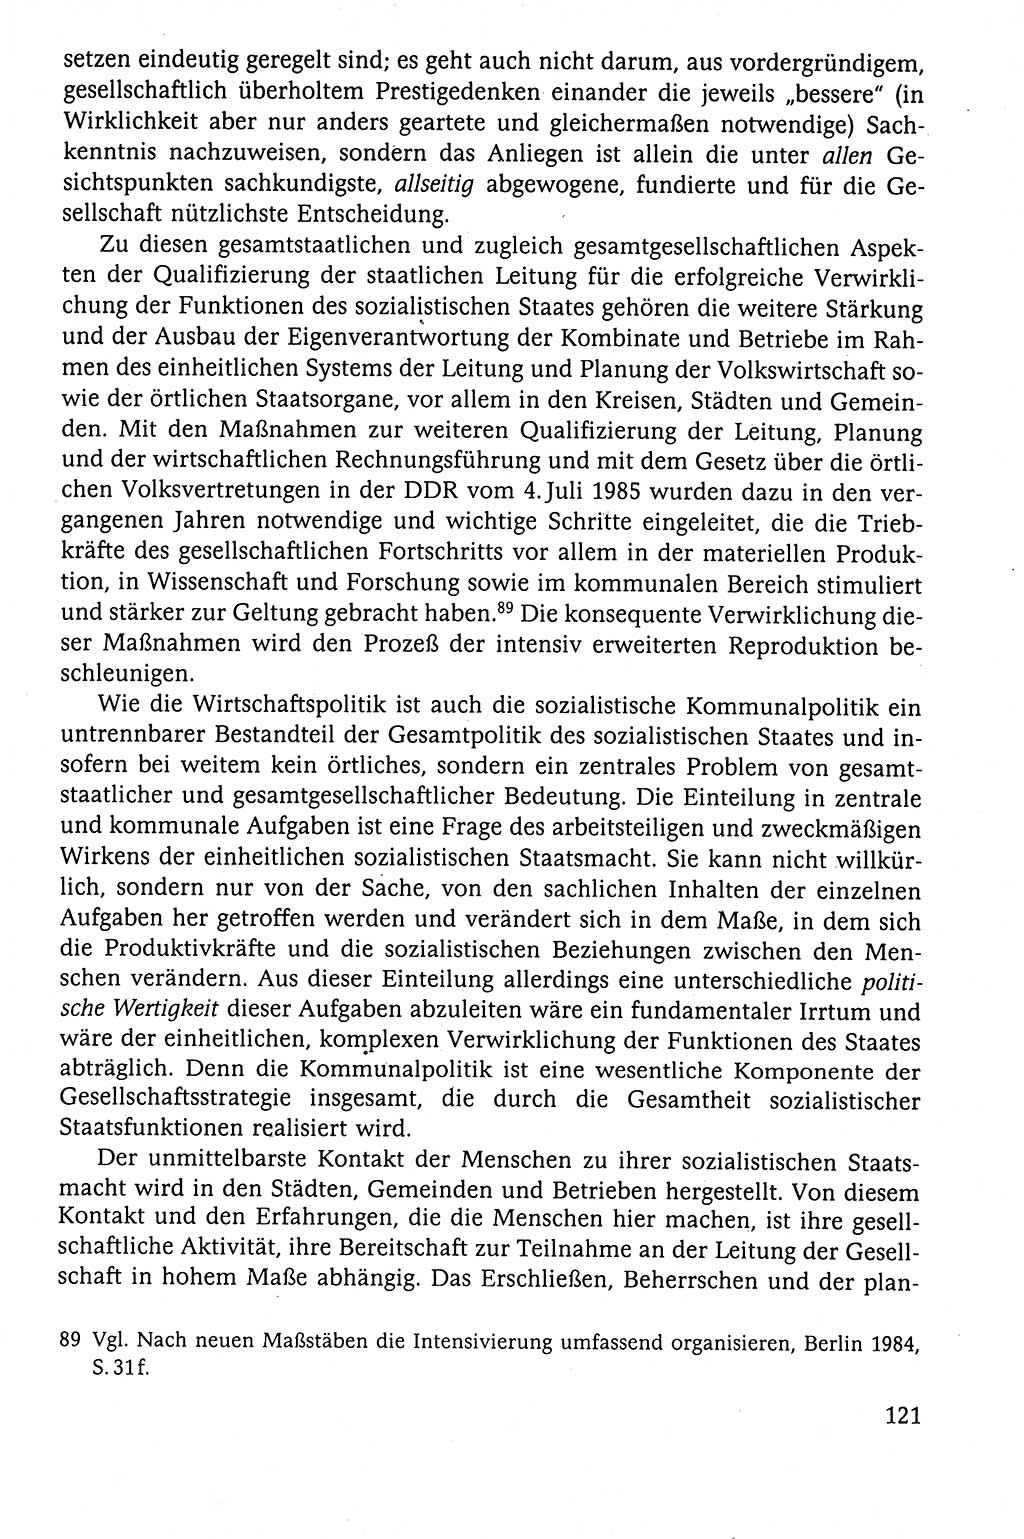 Der Staat im politischen System der DDR (Deutsche Demokratische Republik) 1986, Seite 121 (St. pol. Sys. DDR 1986, S. 121)